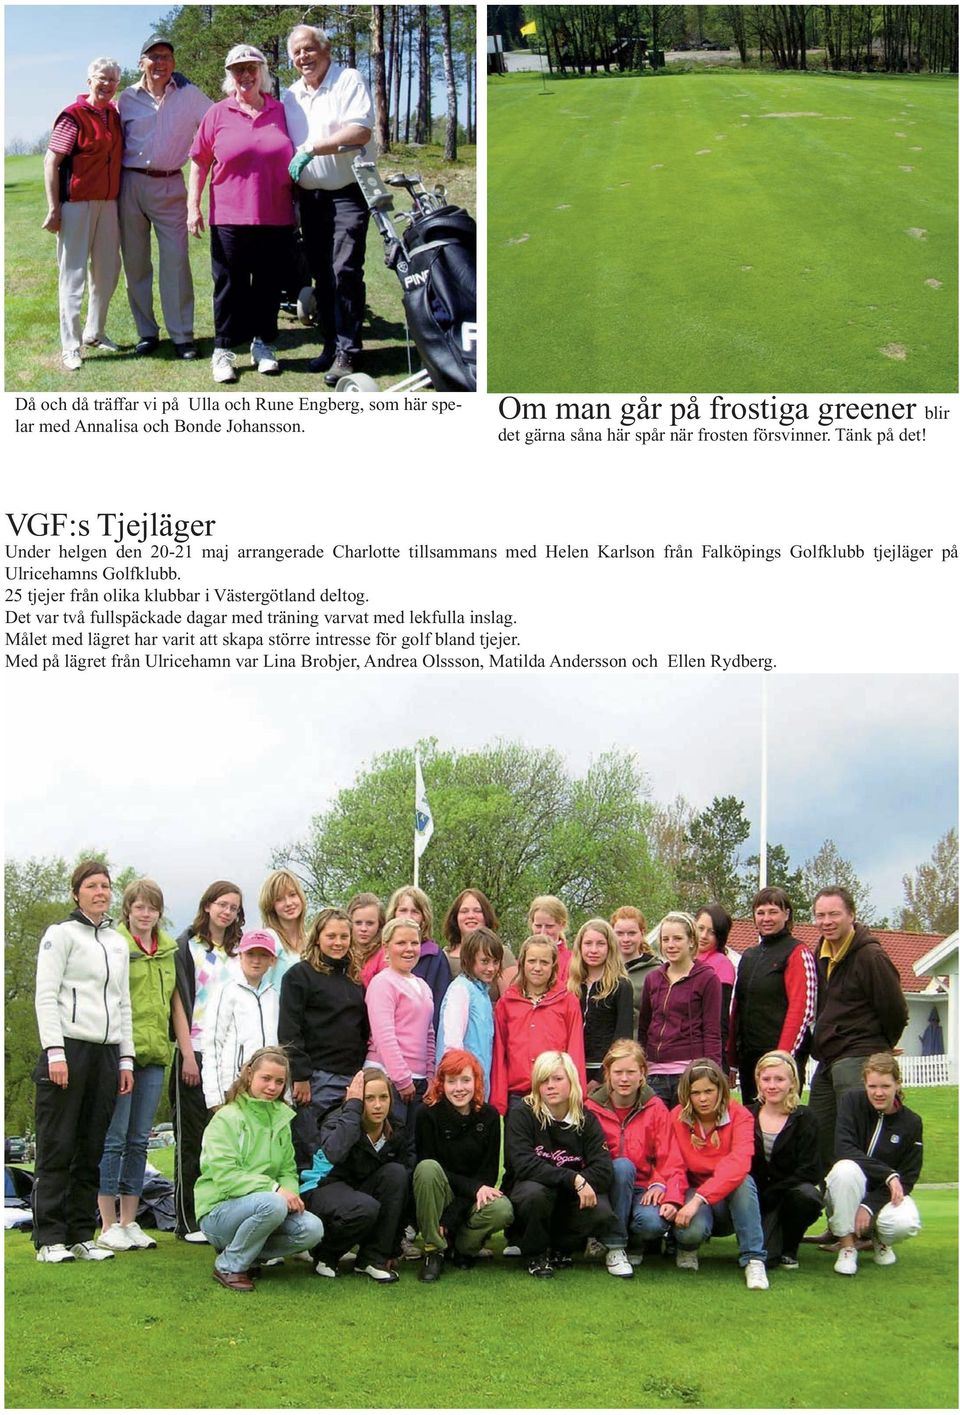 VGF:s Tjejläger Under helgen den 20-21 maj arrangerade Charlotte tillsammans med Helen Karlson från Falköpings Golfklubb tjejläger på Ulricehamns Golfklubb.